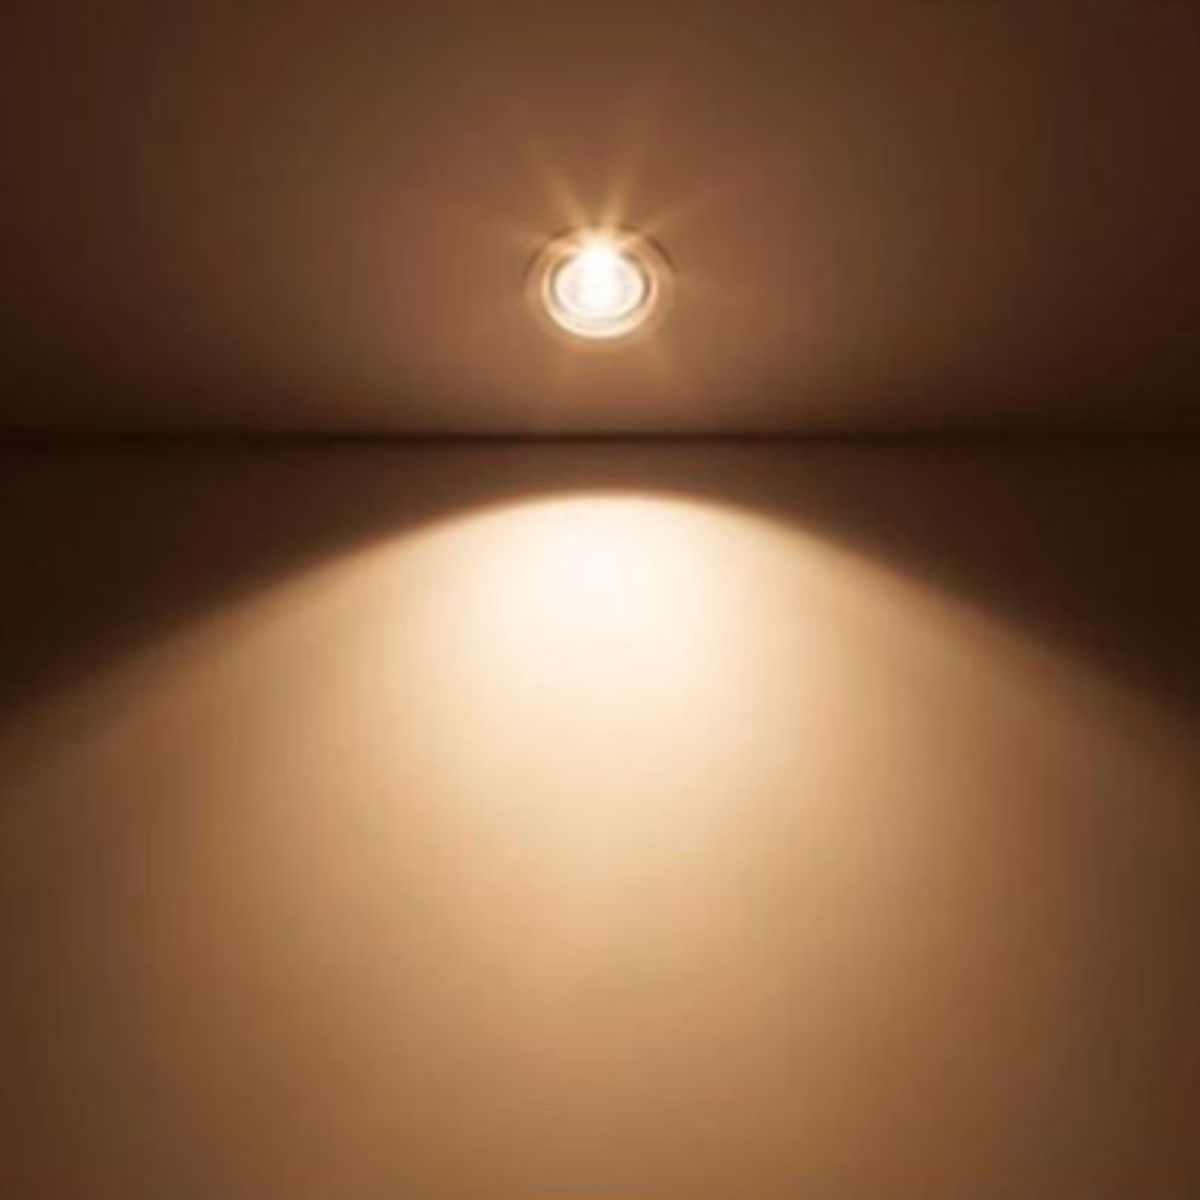 Bộ đèn LED Spotlight SL201 PHILIPS 220-240V - Chiếu điểm hiệu quả, thay đổi góc chiếu linh hoạt - Hàng Chính Hãng